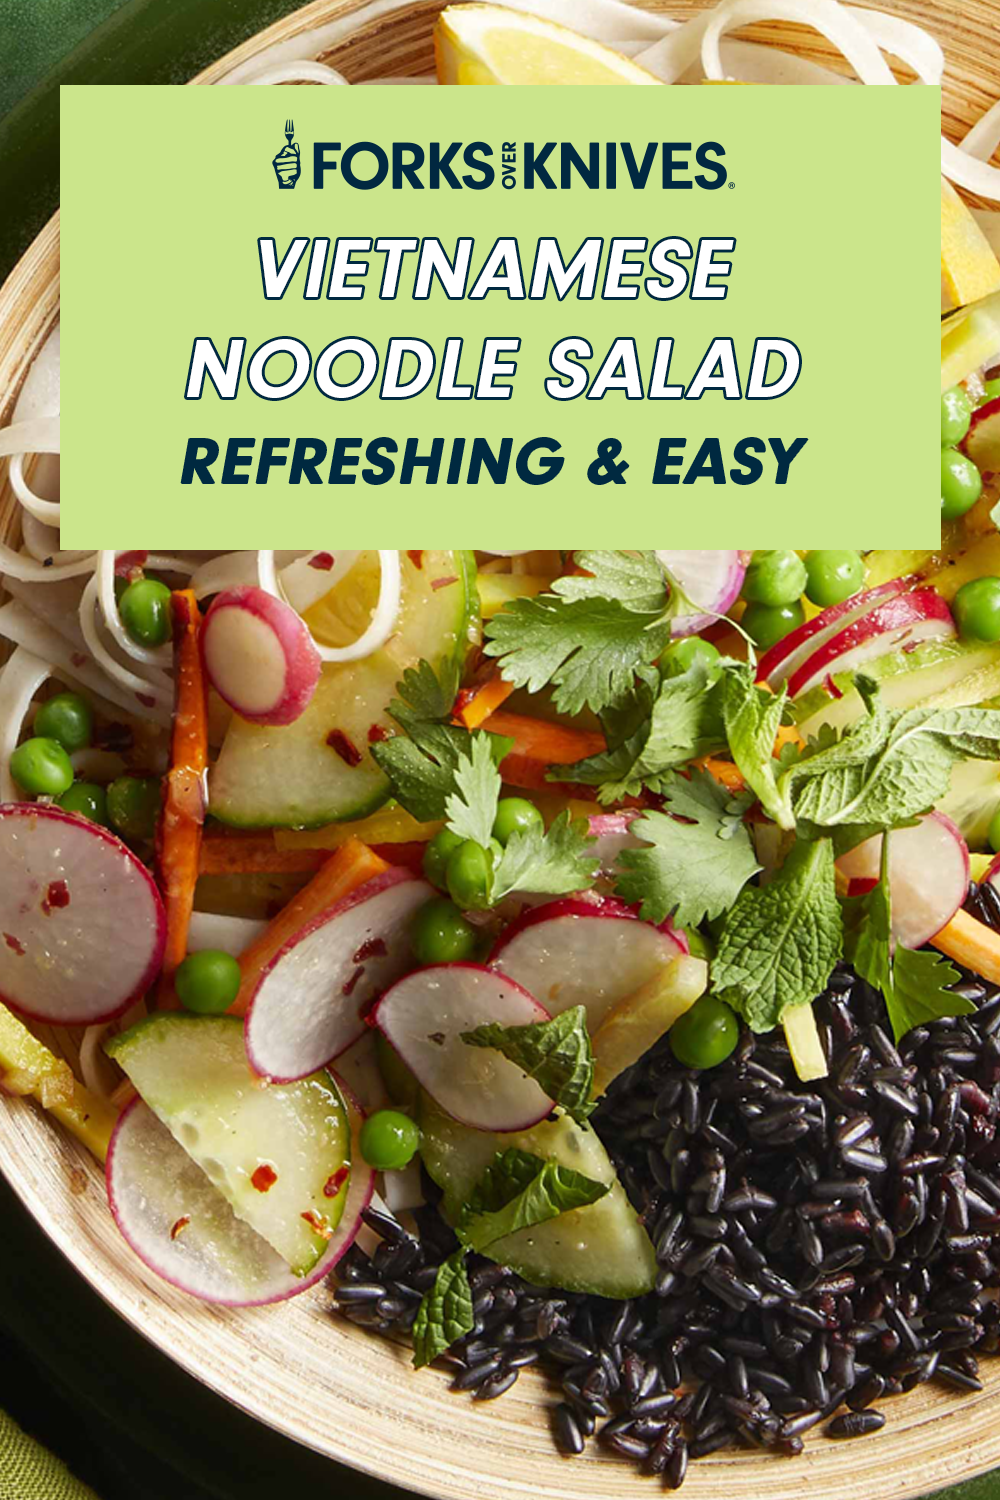 Refreshing Vietnamese Noodle Salad Recipe - Forks Over Knives